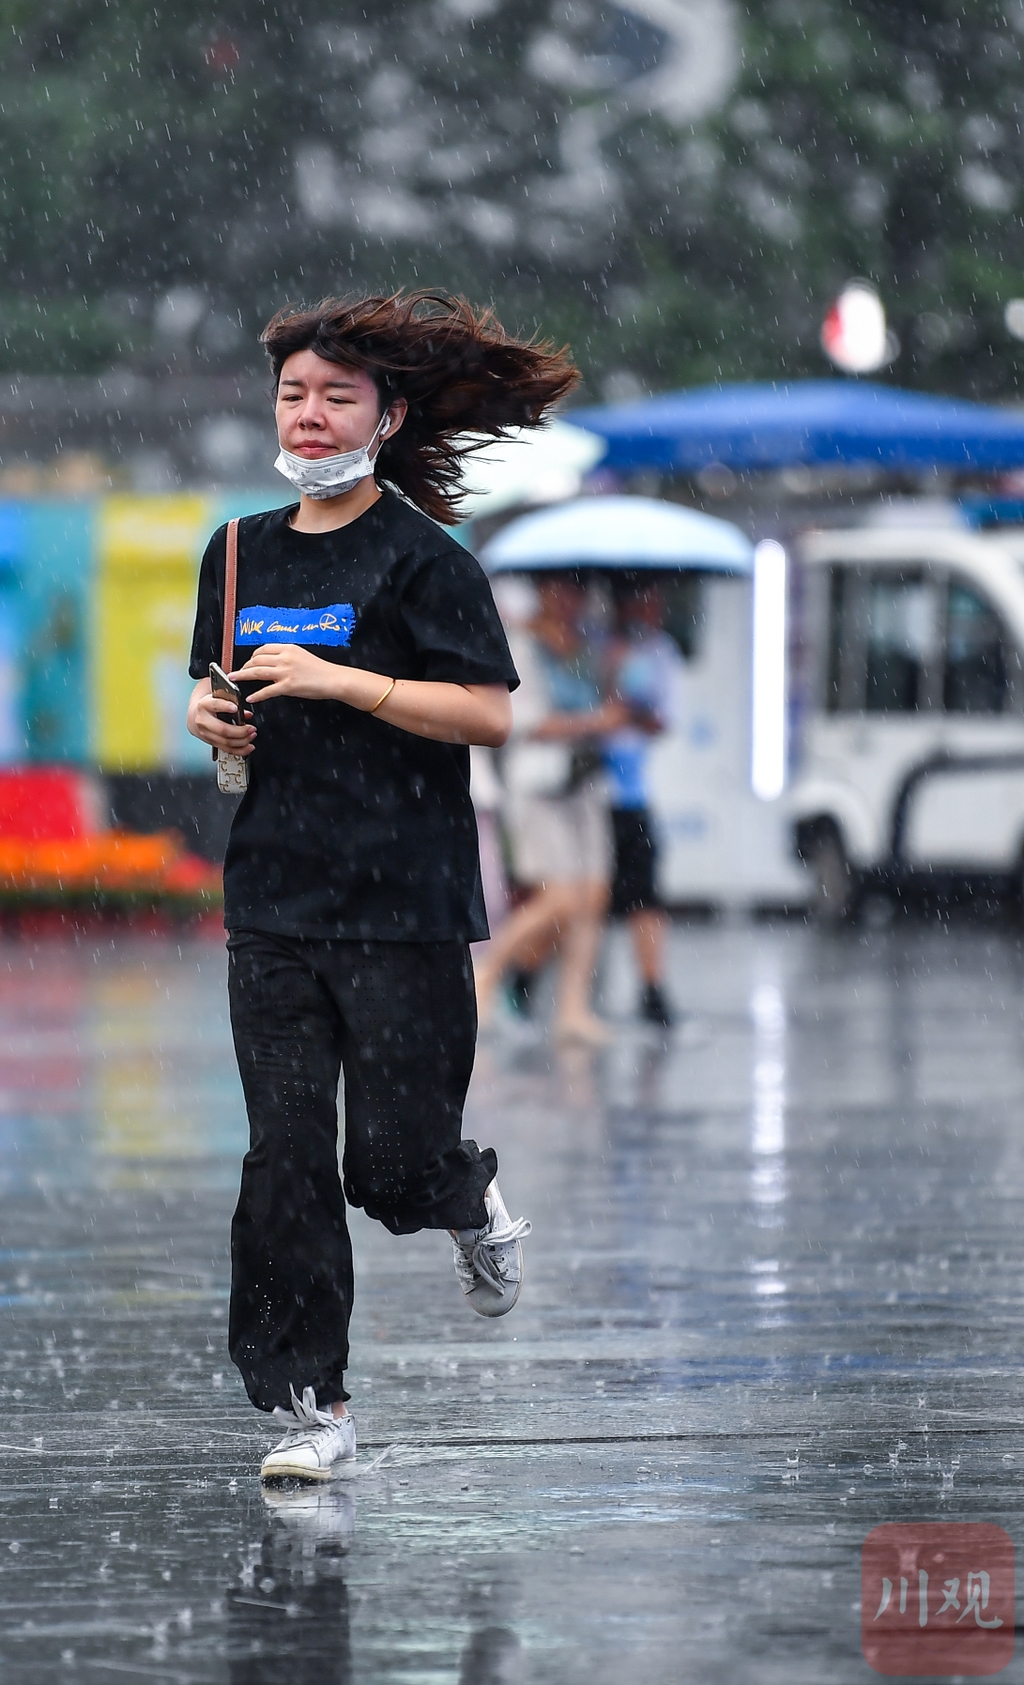 市民在雨中跑步前行小朋友在雨中跑步前行市民在雨中跑步前行雨中的